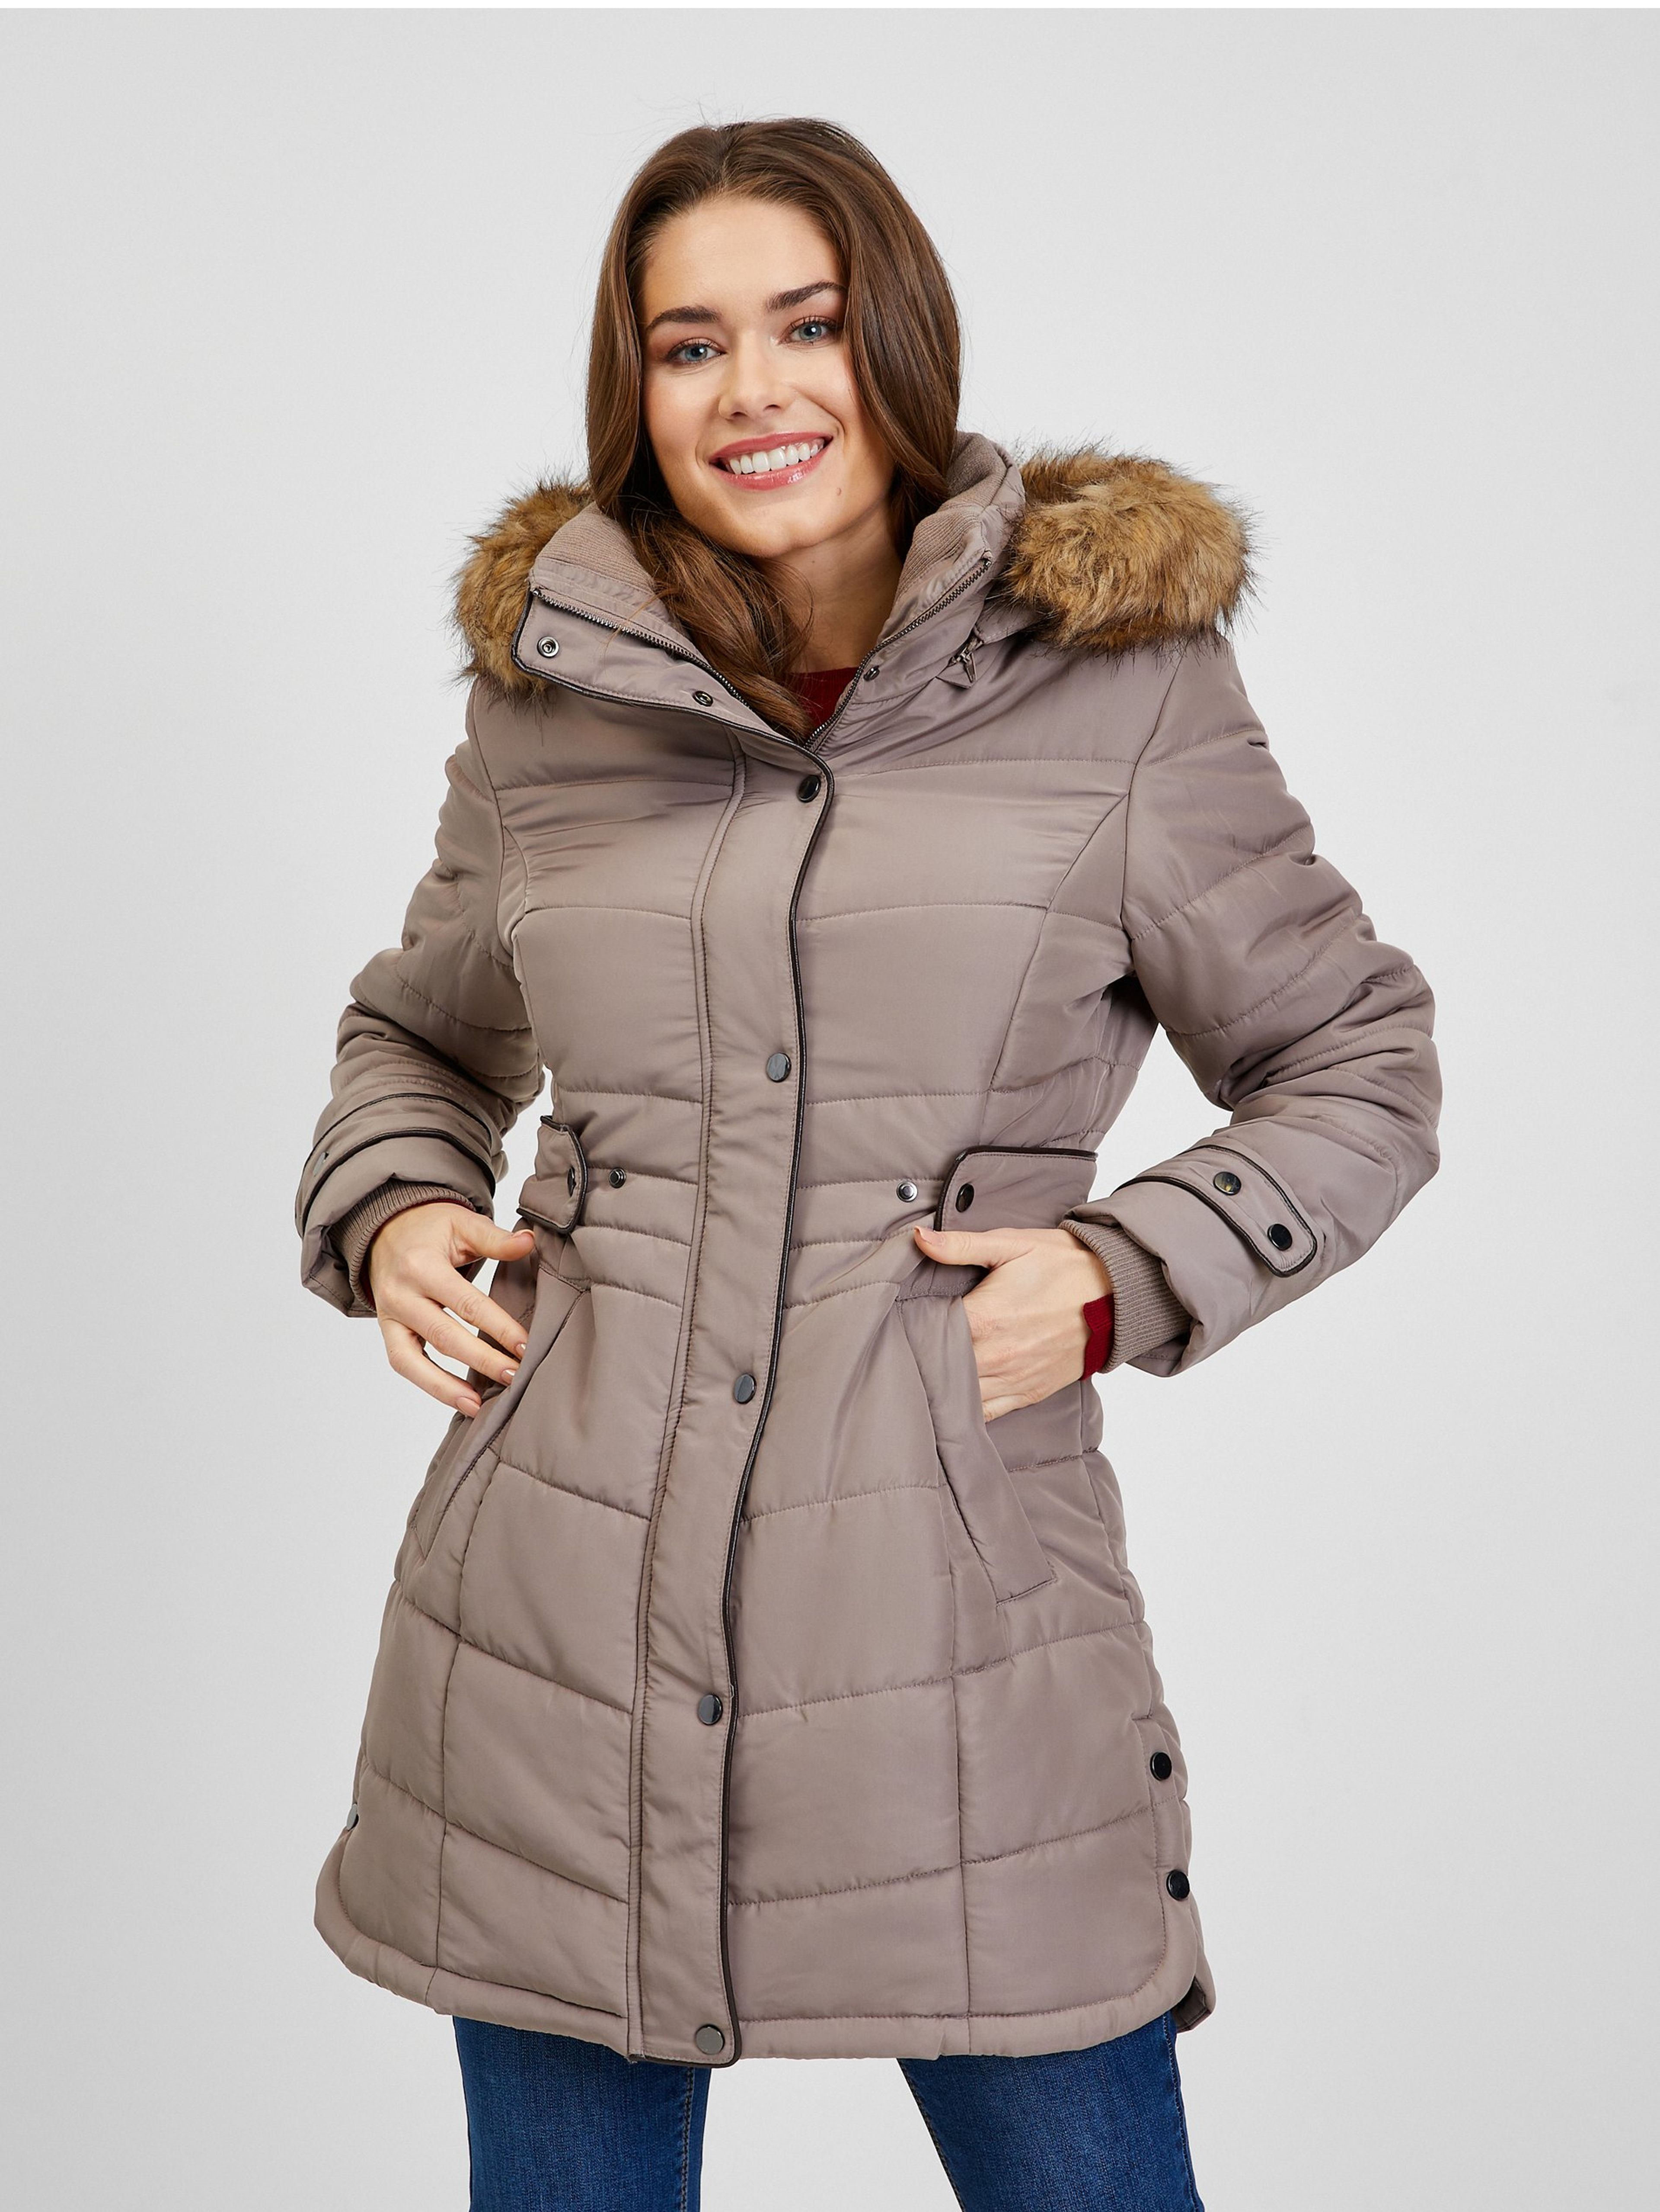 Hnedý dámsky prešívaný zimný kabát s odnímateľnou kapucňou s kožušinou ORSAY